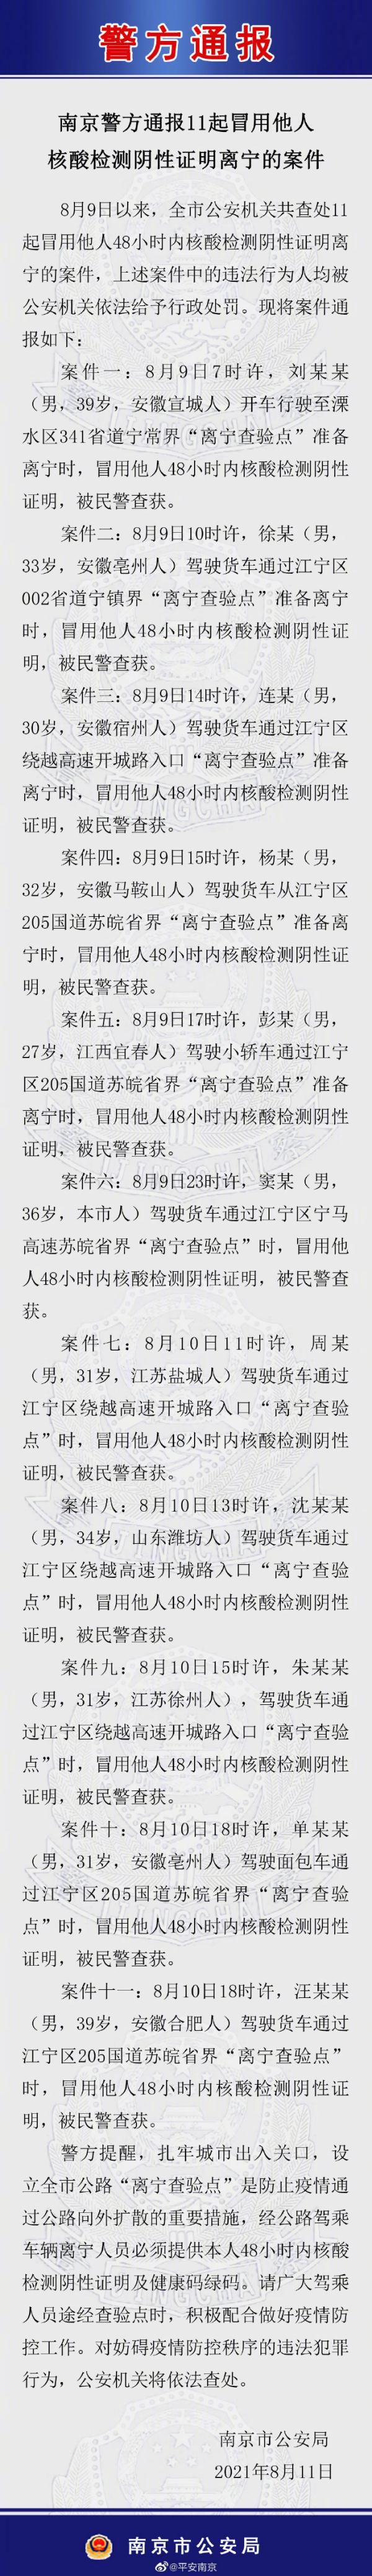 江苏南京警方通报11起冒用他人核酸检测阴性证明离宁的案件